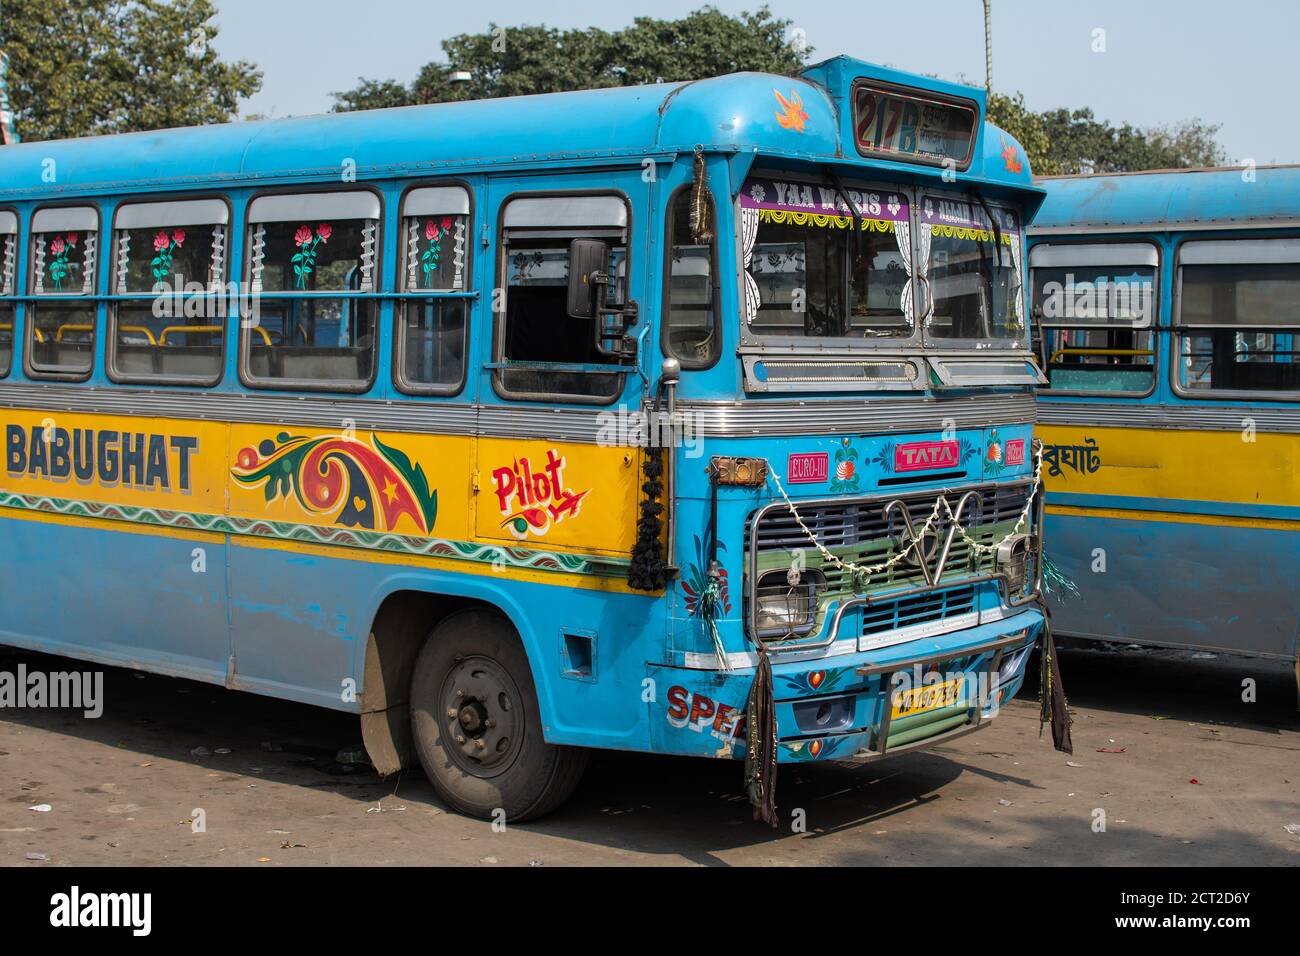 Kolkata, Inde - 1er février 2020 : deux bus publics traditionnels turquoise et jaune garés à une gare routière le 1er février 2020 à Kolkata, Inde Banque D'Images